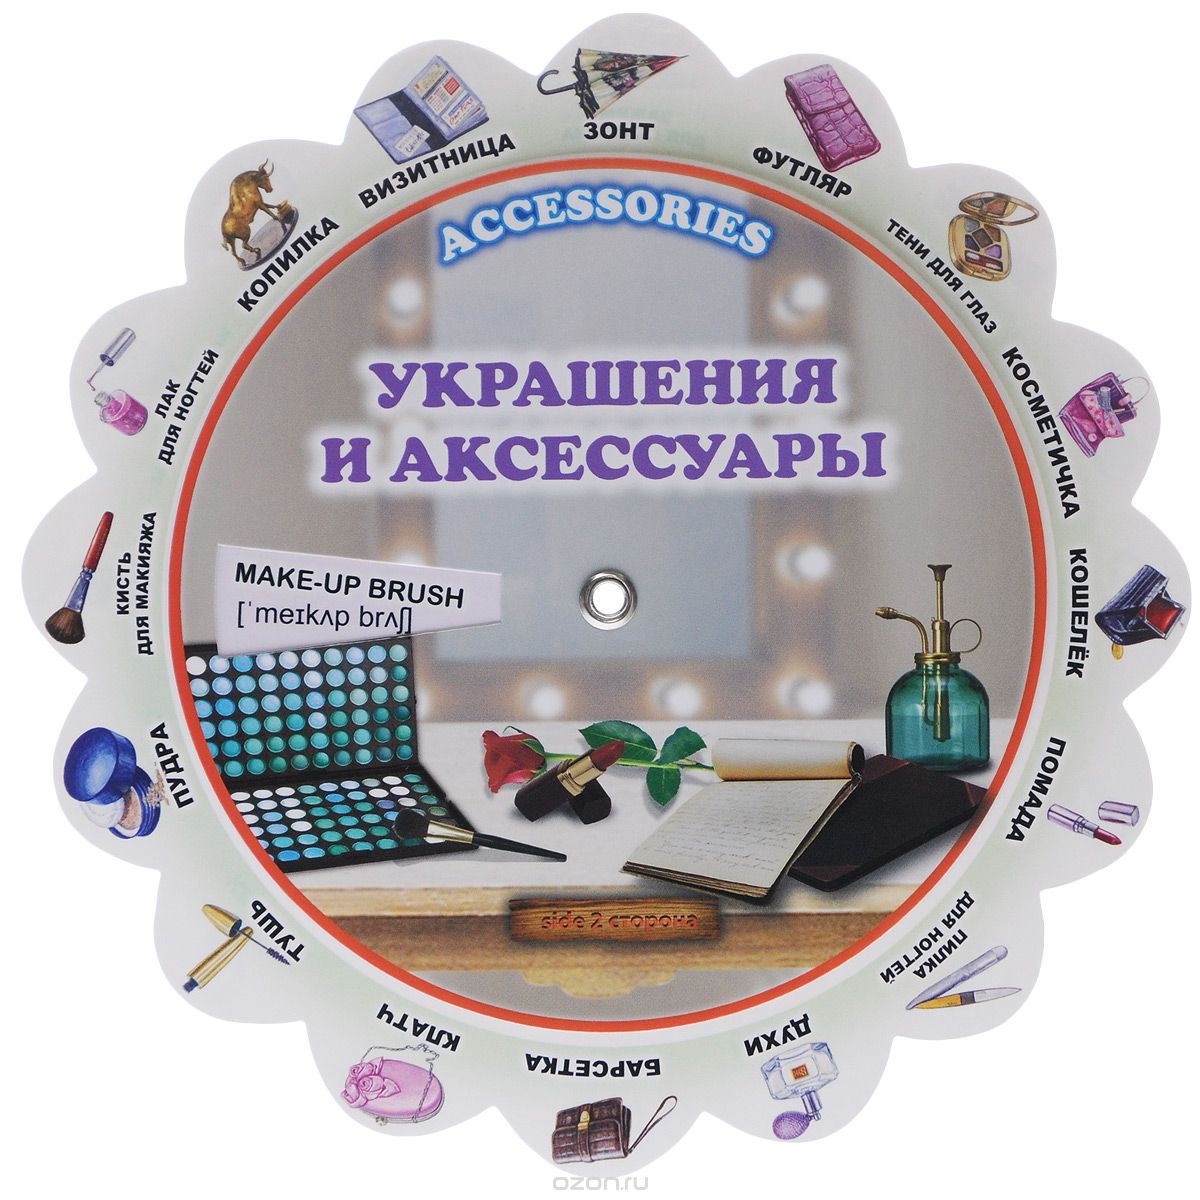 Accessories / Украшения и аксессуары. Иллюстрированный тематический словарь